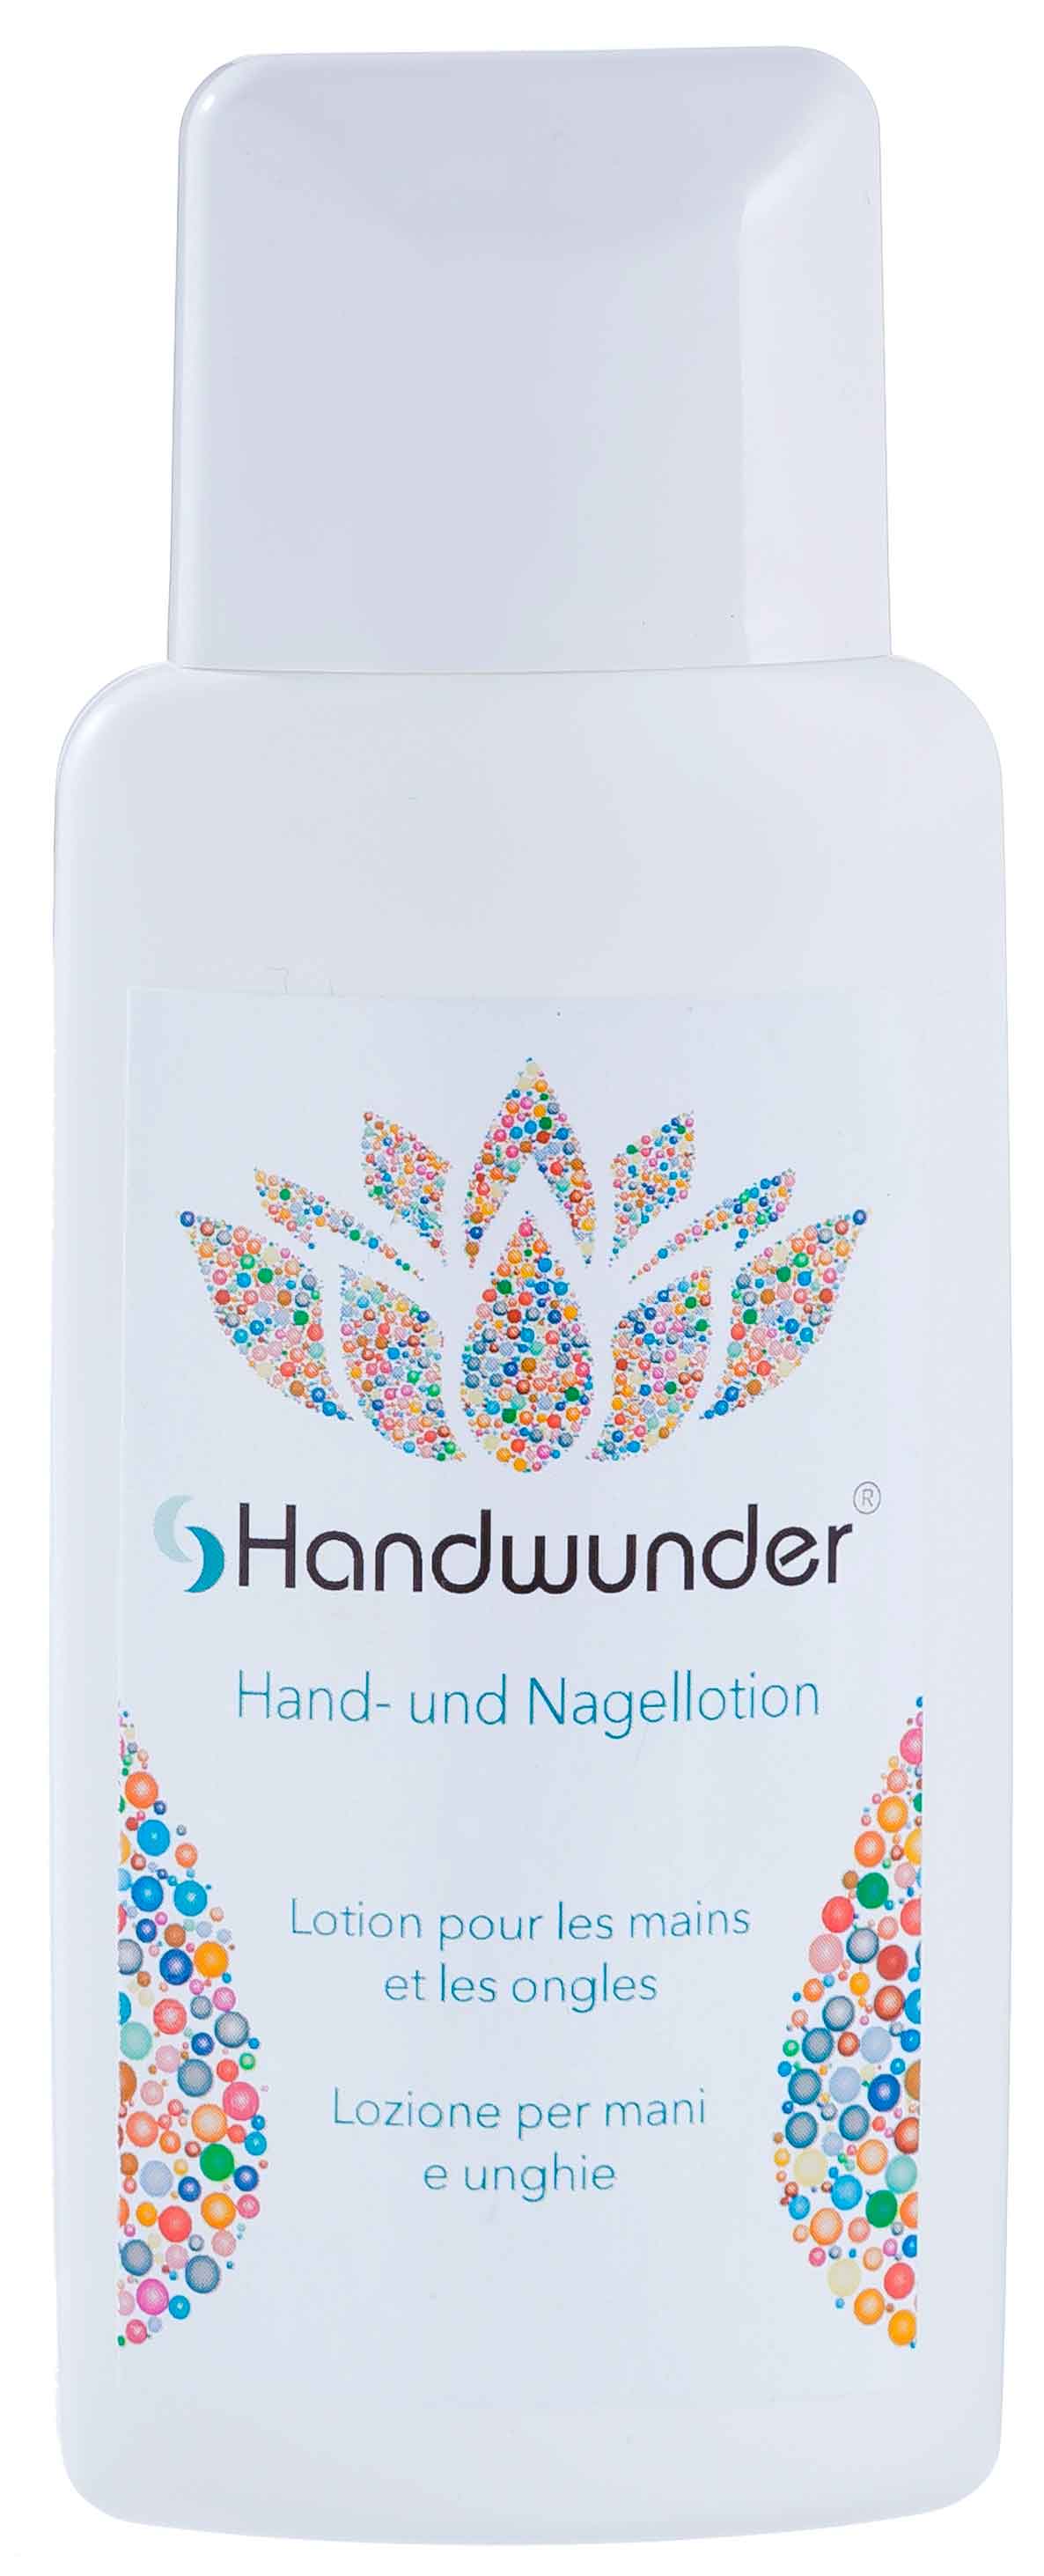 Handwunder Hand- und Nagellotion 200 ml